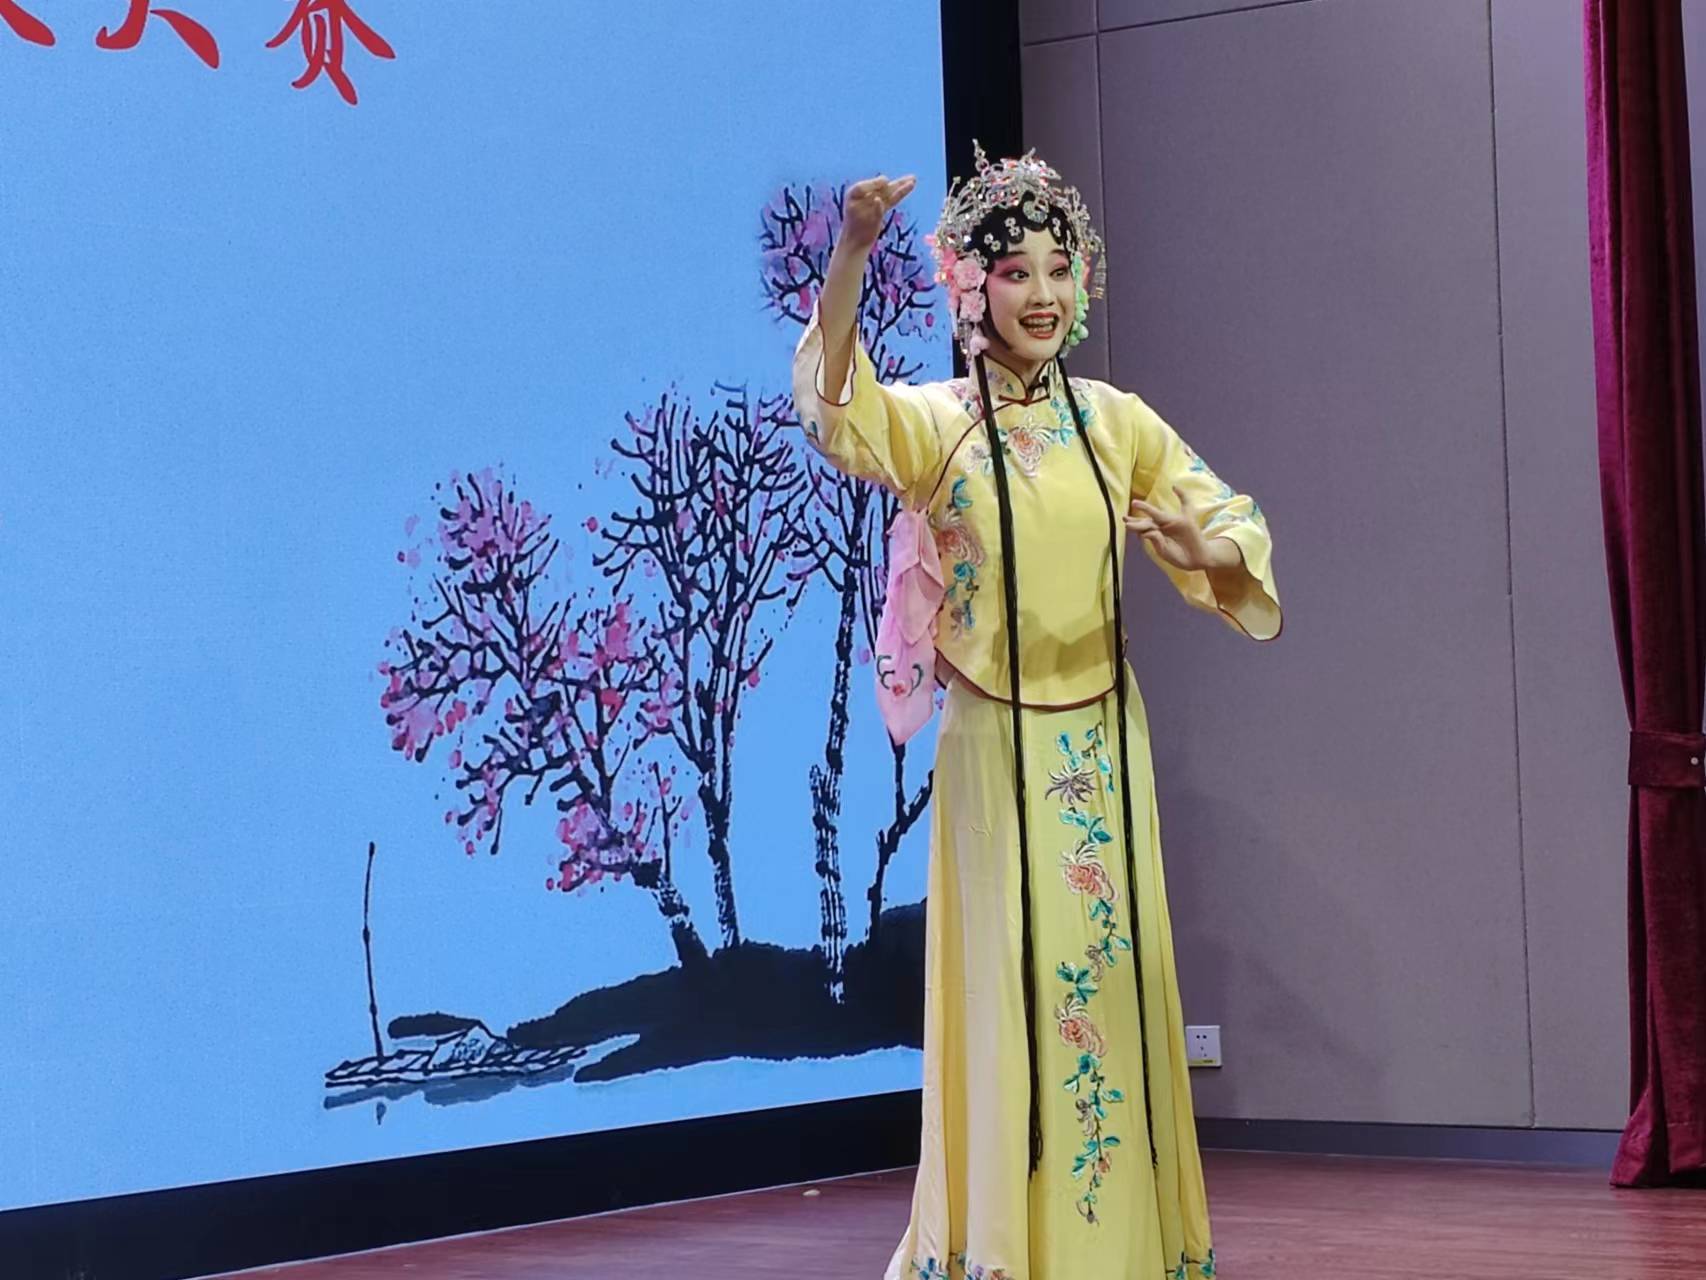 唐山市举行首届未成年人戏曲唱段大赛